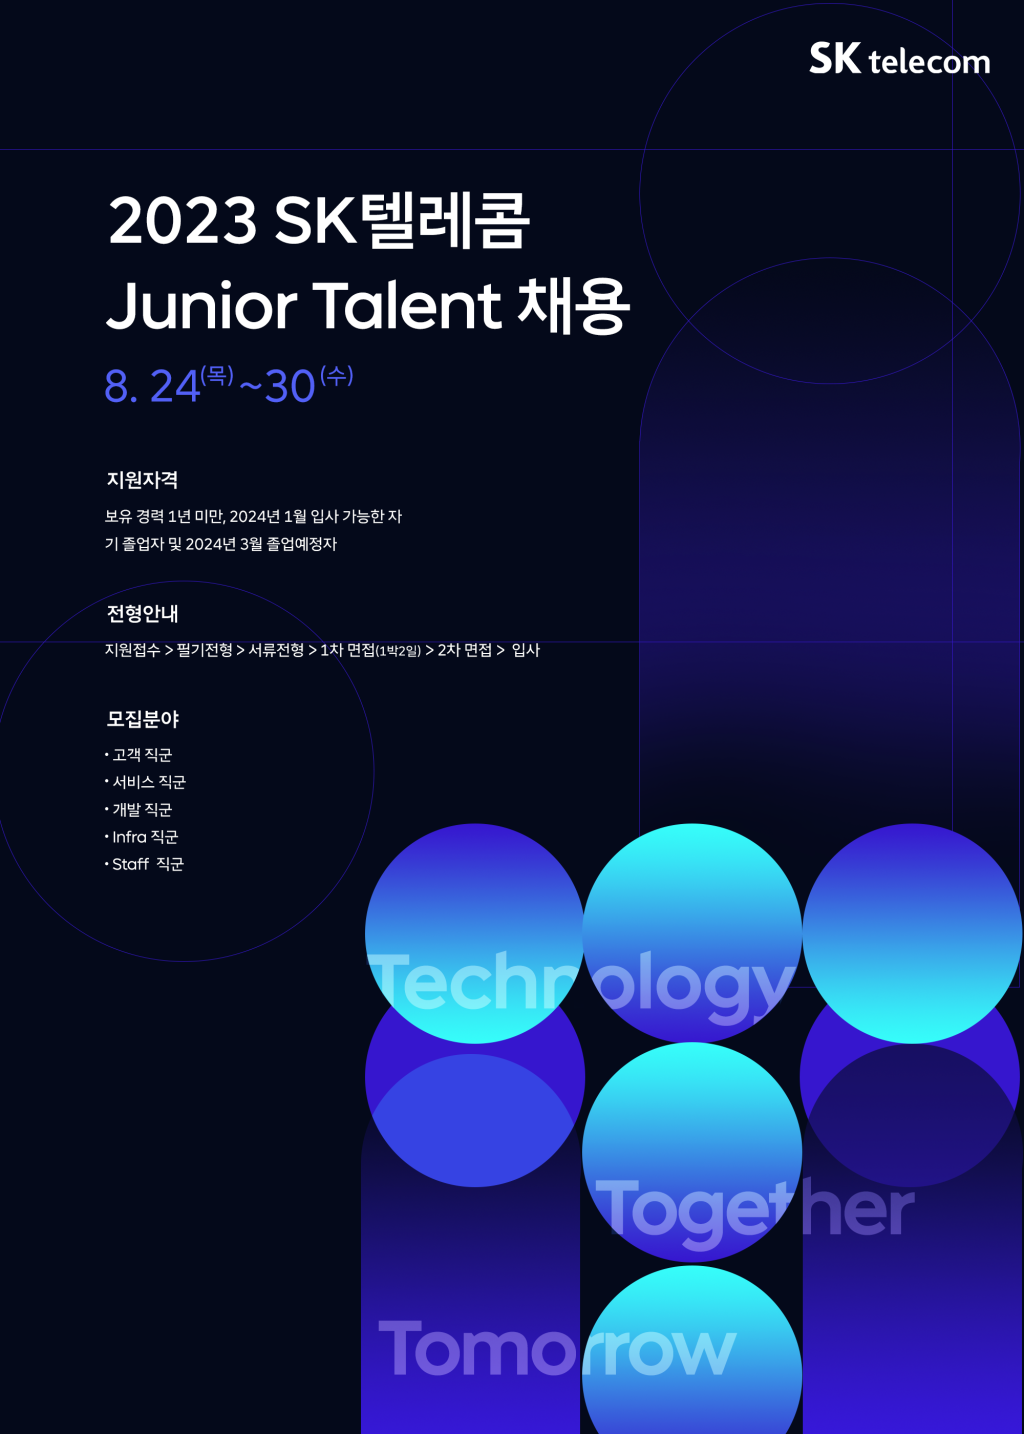 2023 SK텔레콤 Junior Talent 채용(~8/30)